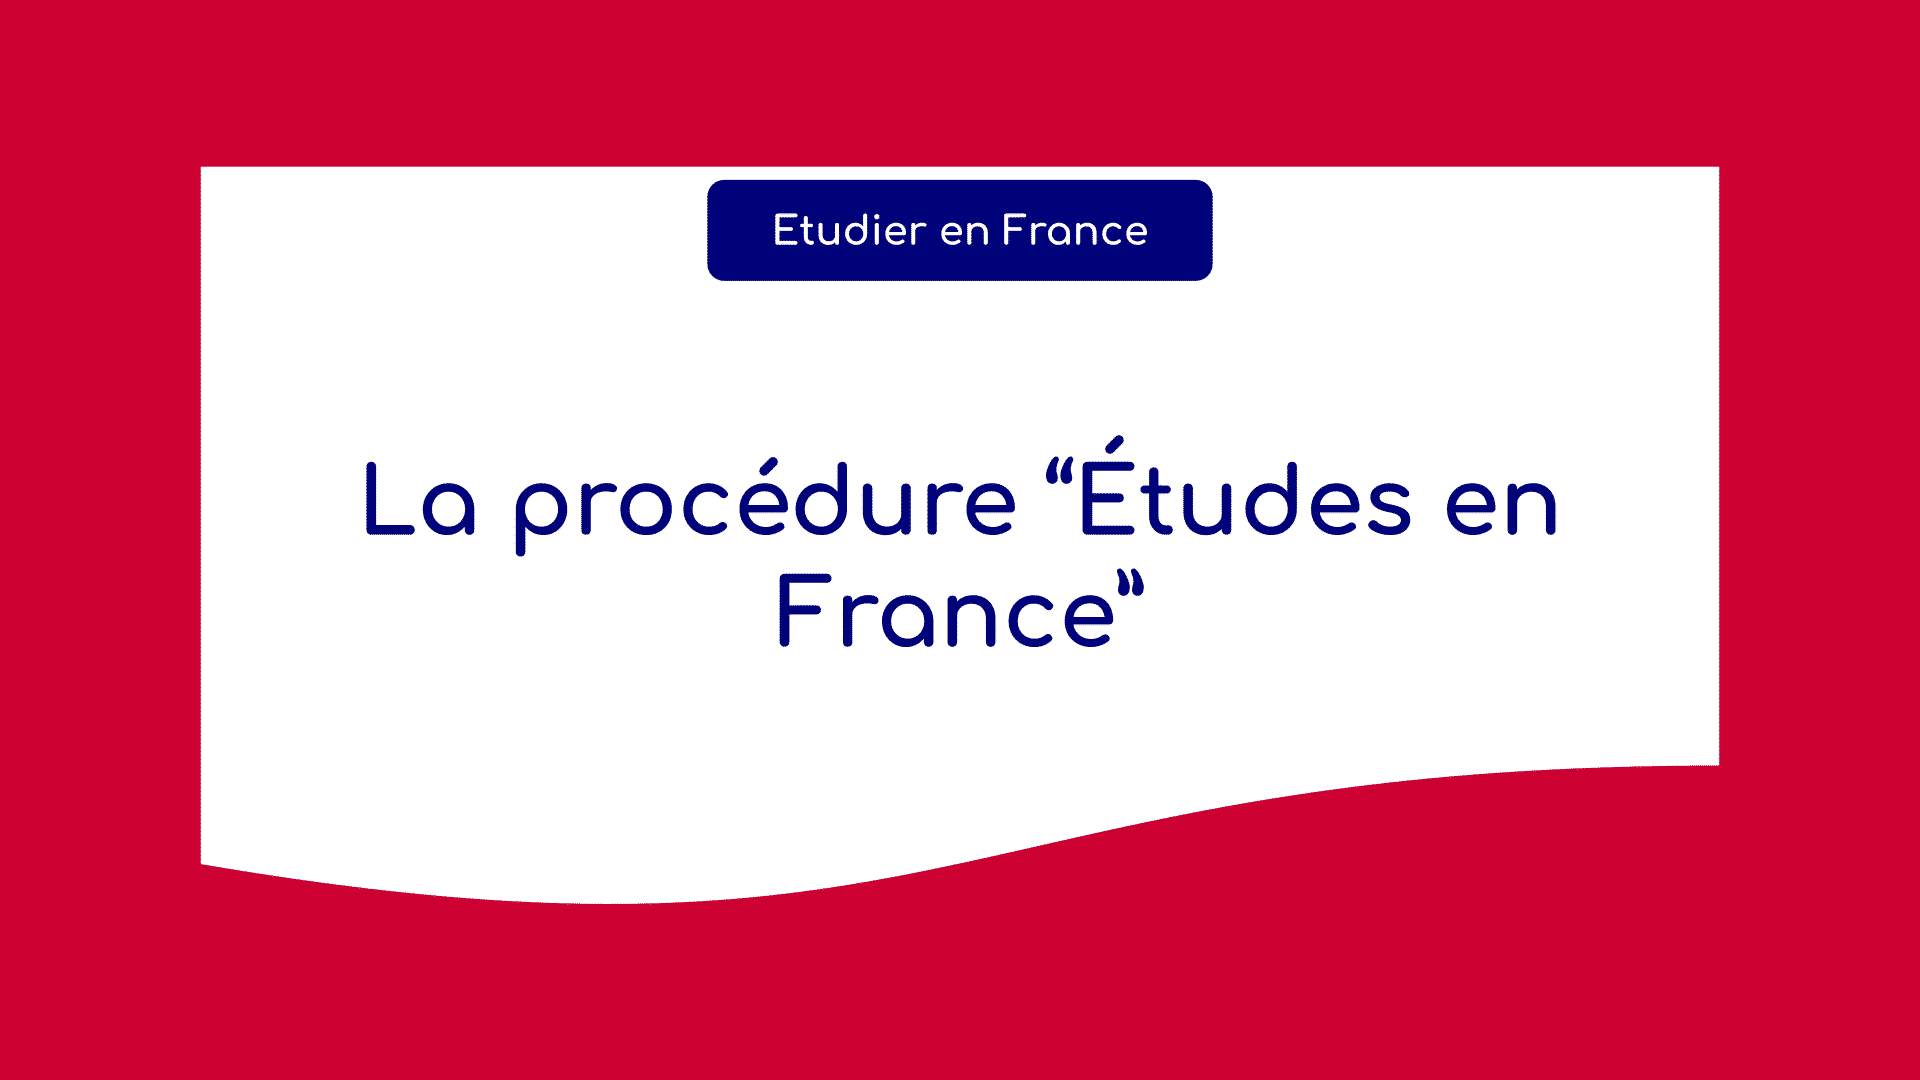 La procédure Études en France pour Campus France